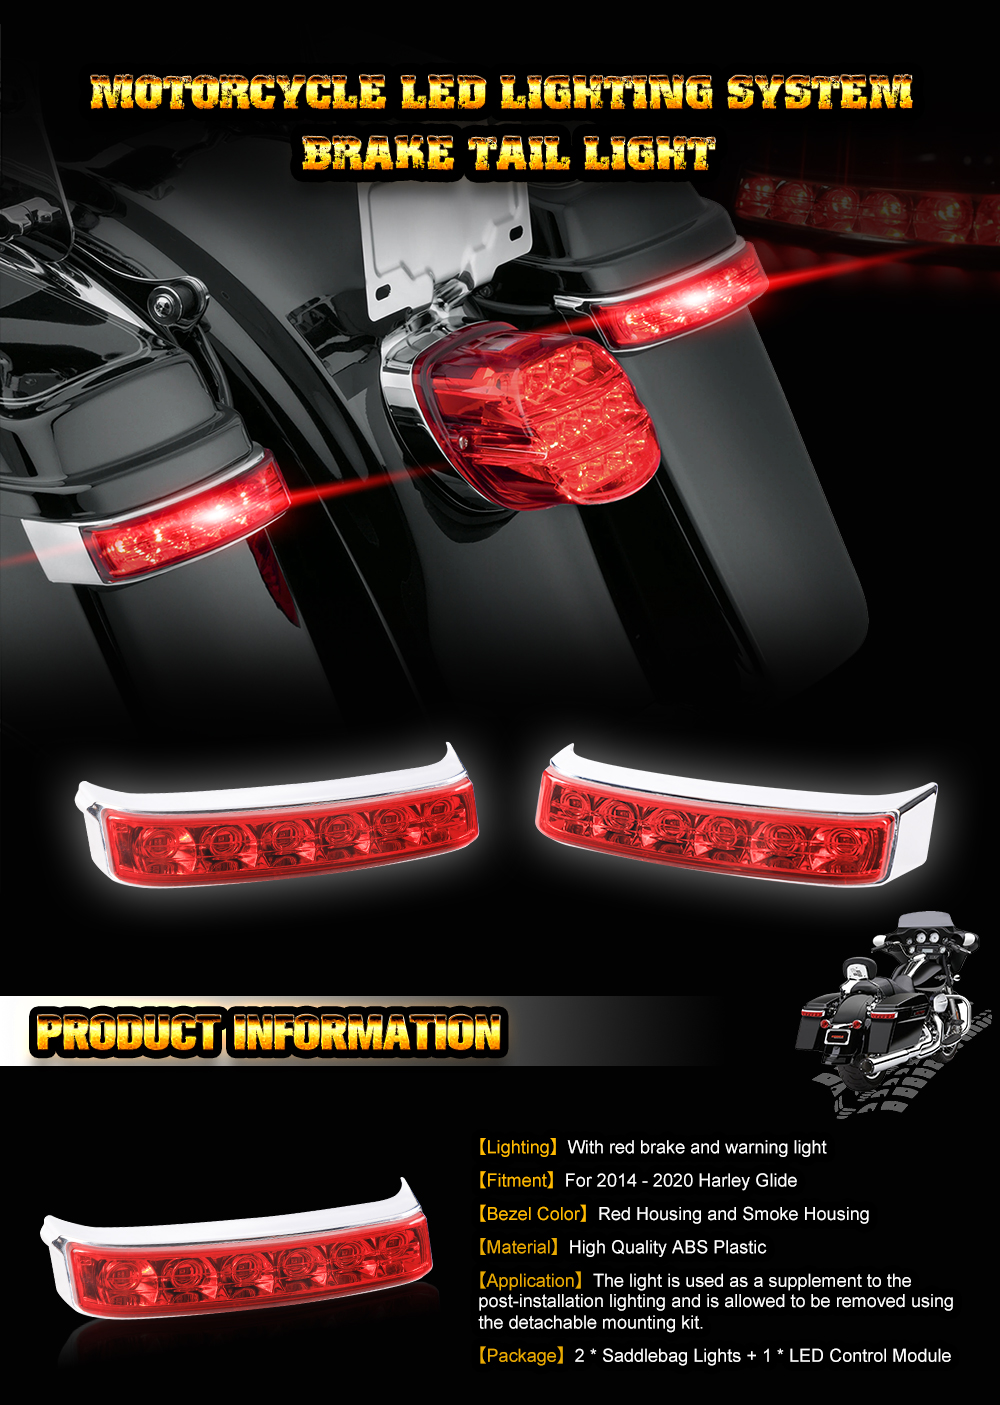 LED Rücklichter für Harley Davison Glide mit Satteltaschen Seiten Koffer, rot